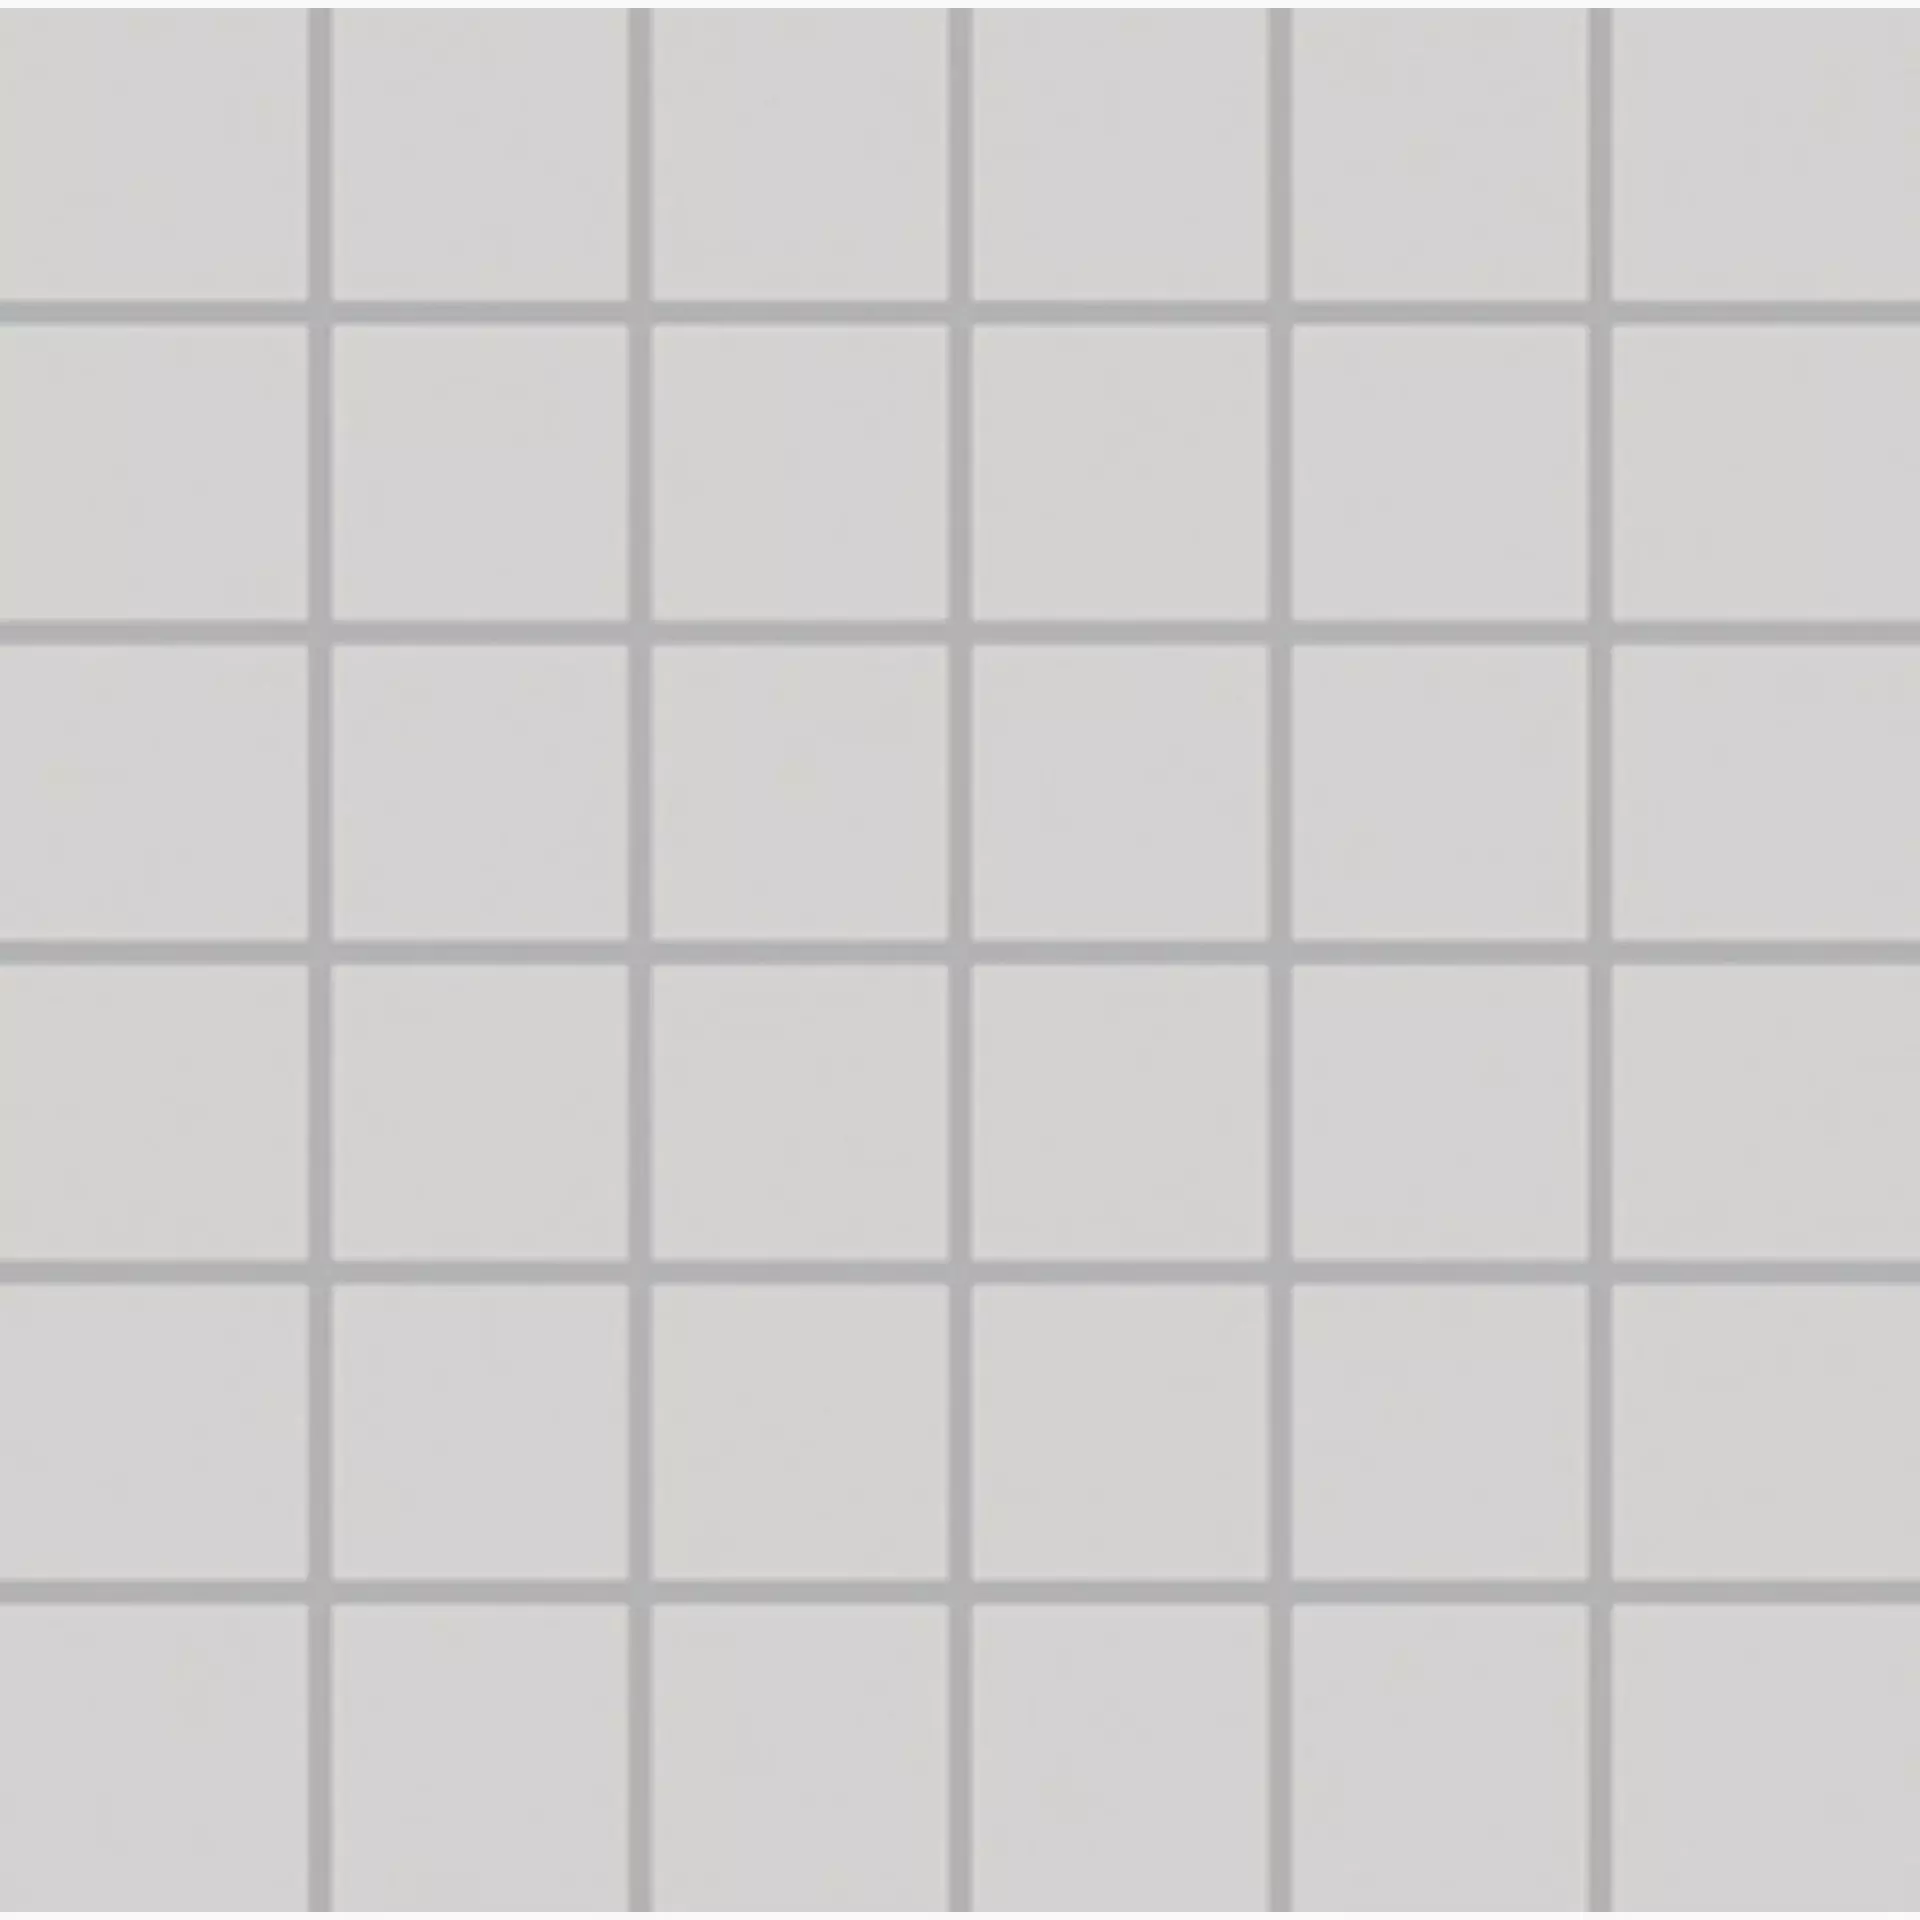 Wandfliese,Bodenfliese Villeroy & Boch Unit One Grey Matt Grey 3709-UT02 matt 5x5cm Mosaik (5x5) 6mm